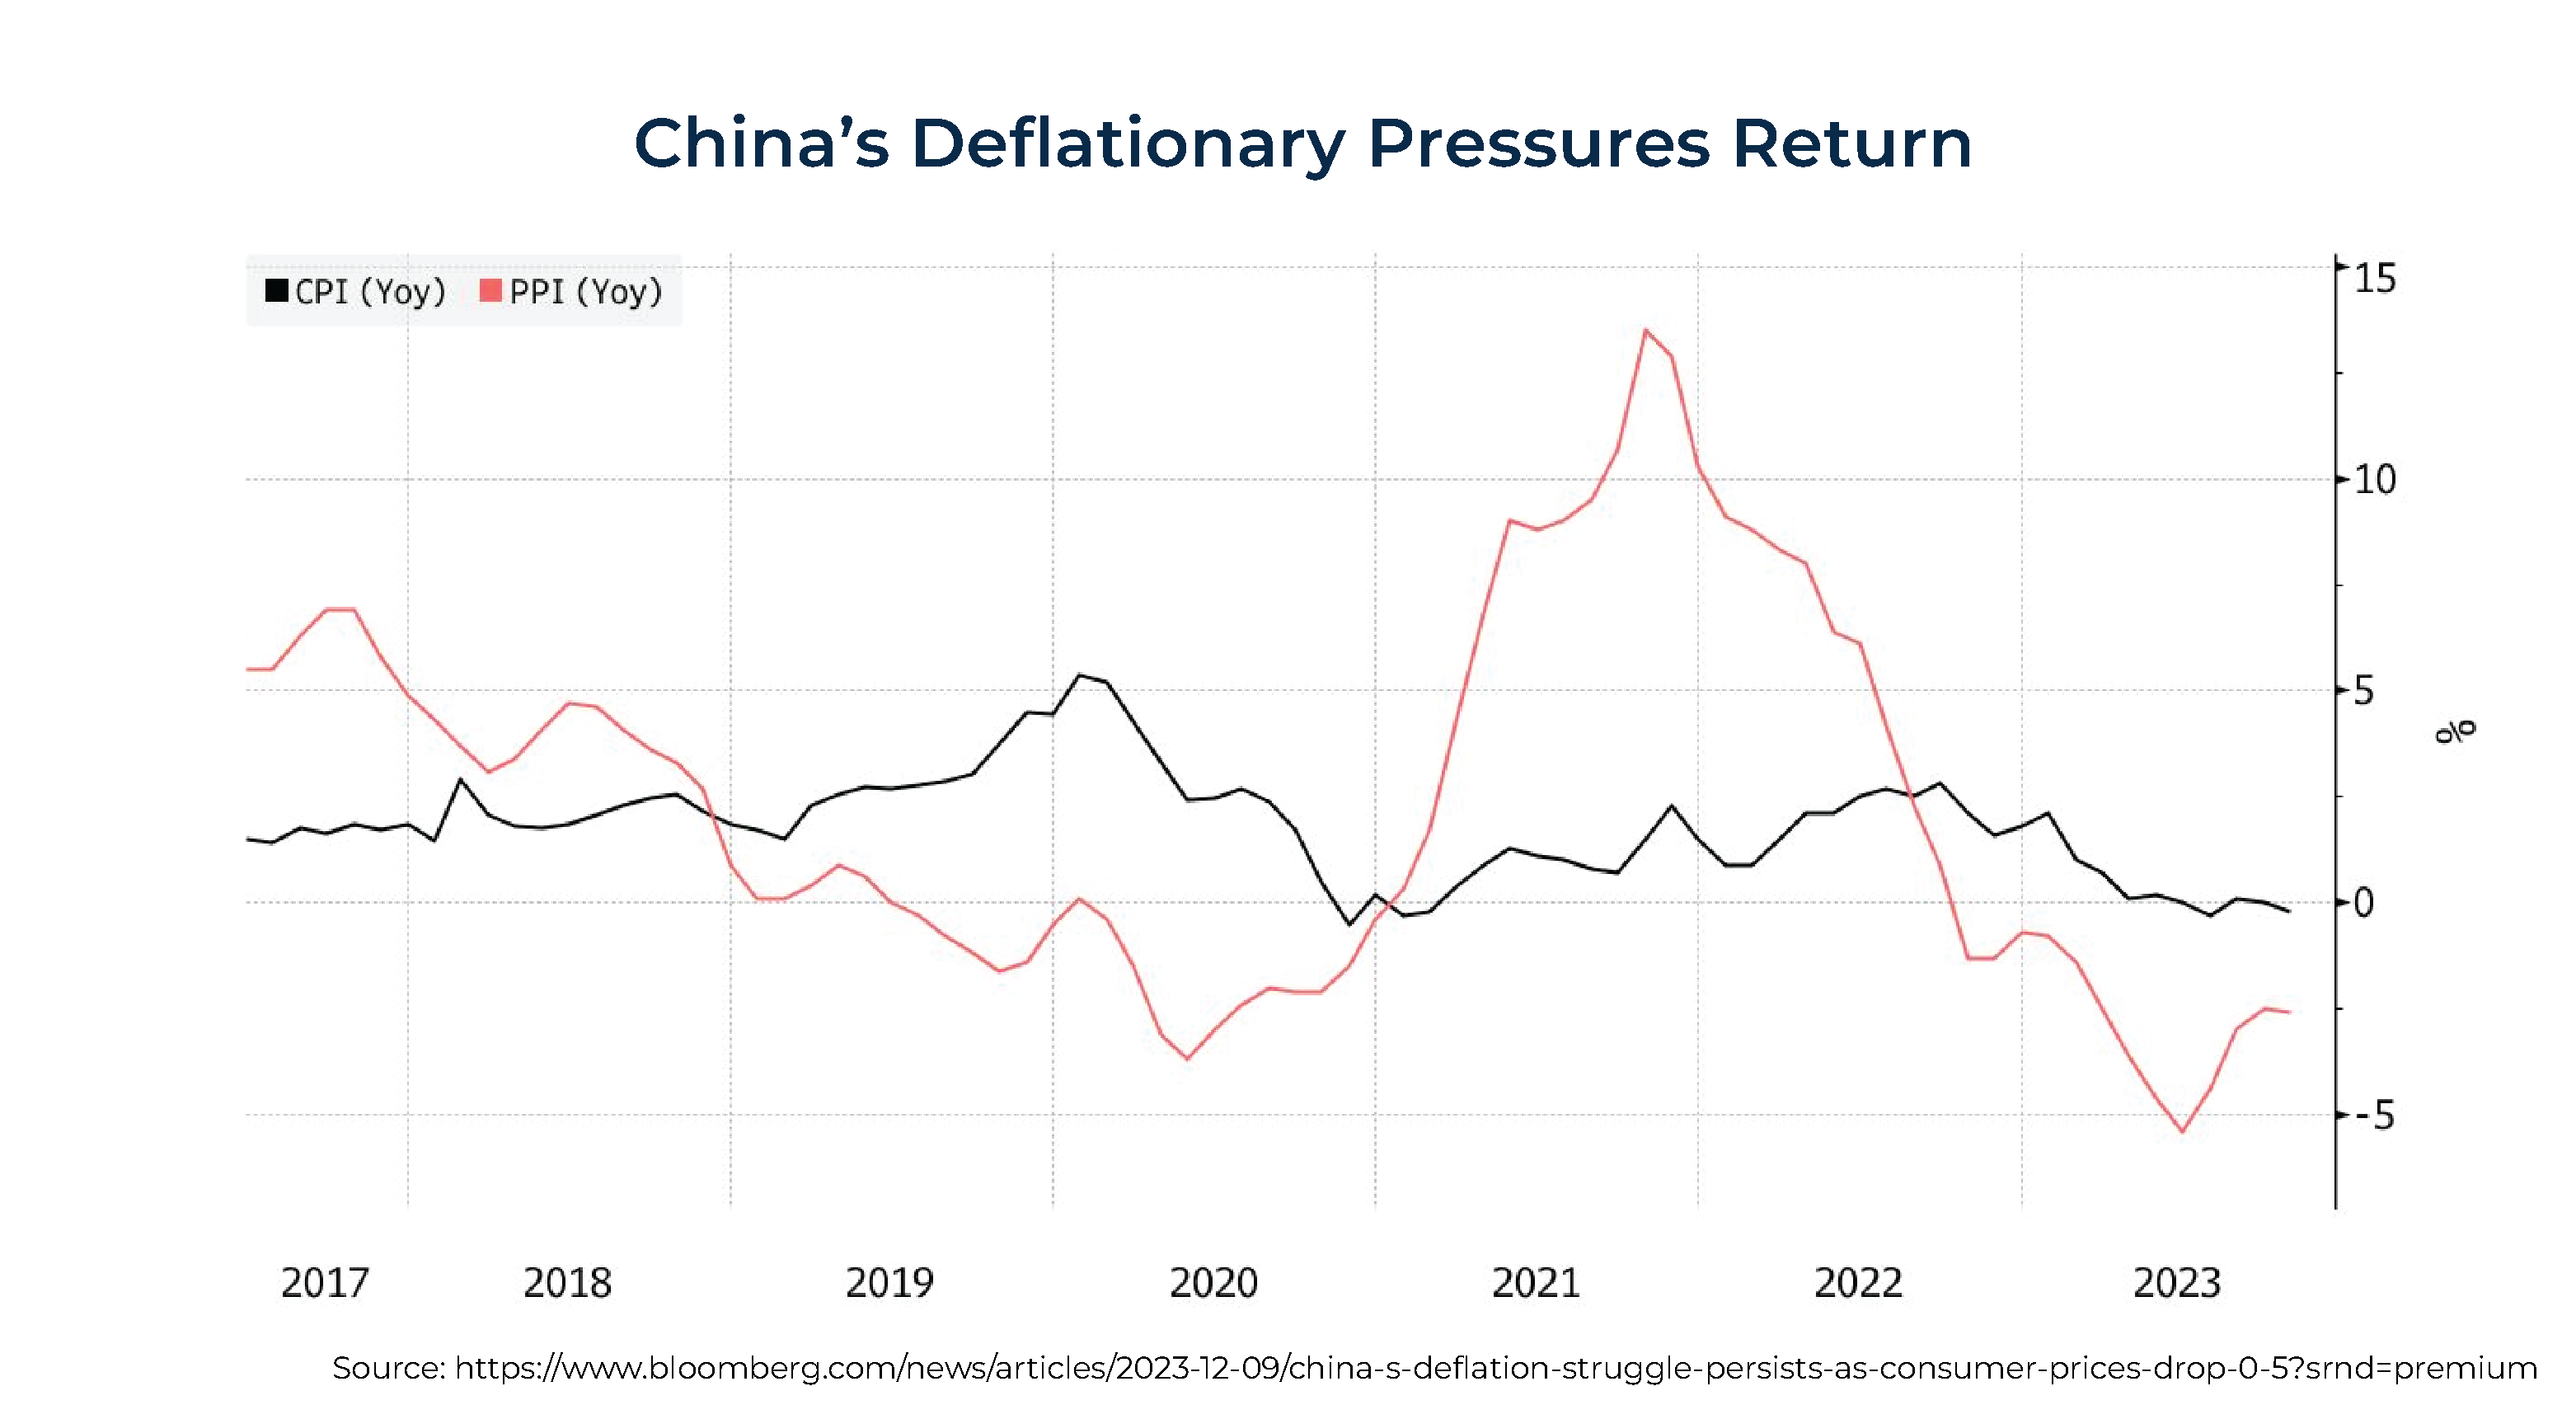 China's Deflationary Pressures Return